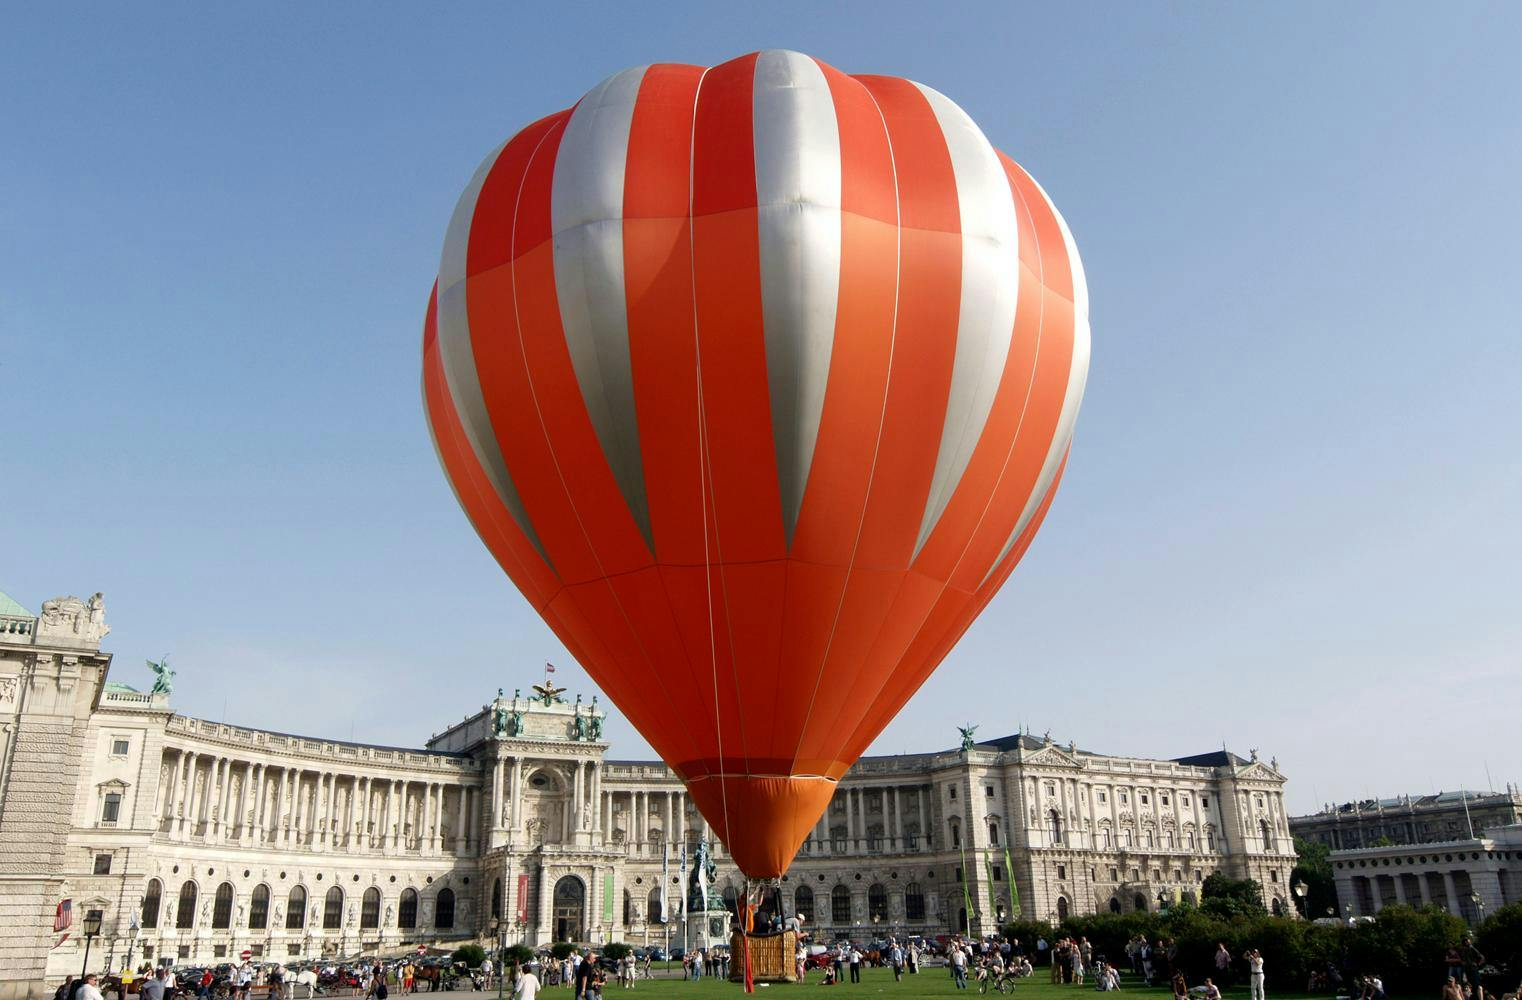 Romantischer Ballonflug | exklusiv für 2 | Flugdauer 1,5 Std